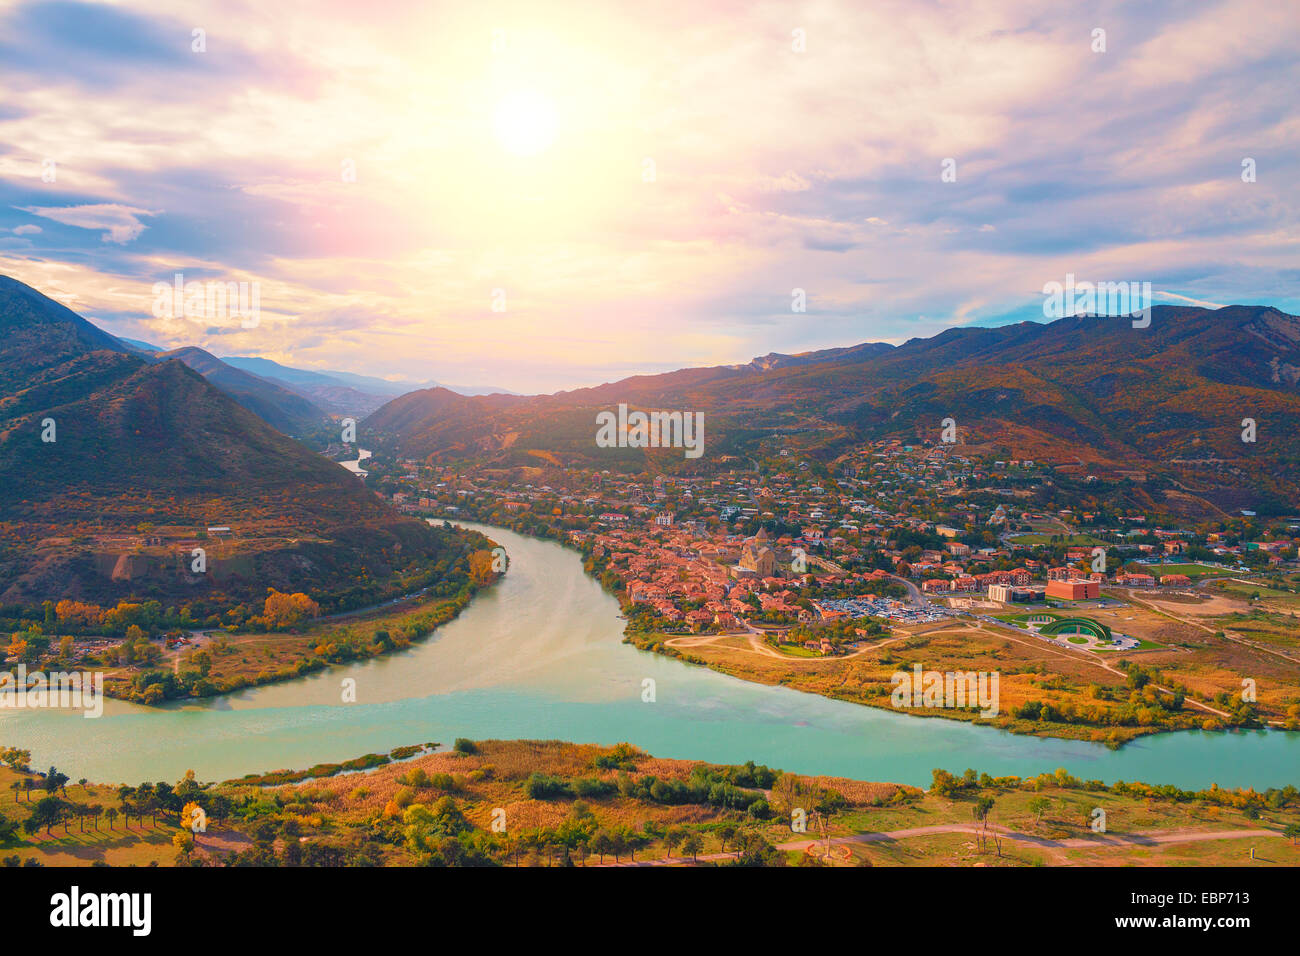 Panoramic view of Mtskheta city from Jvari Monastery in Georgia country Stock Photo